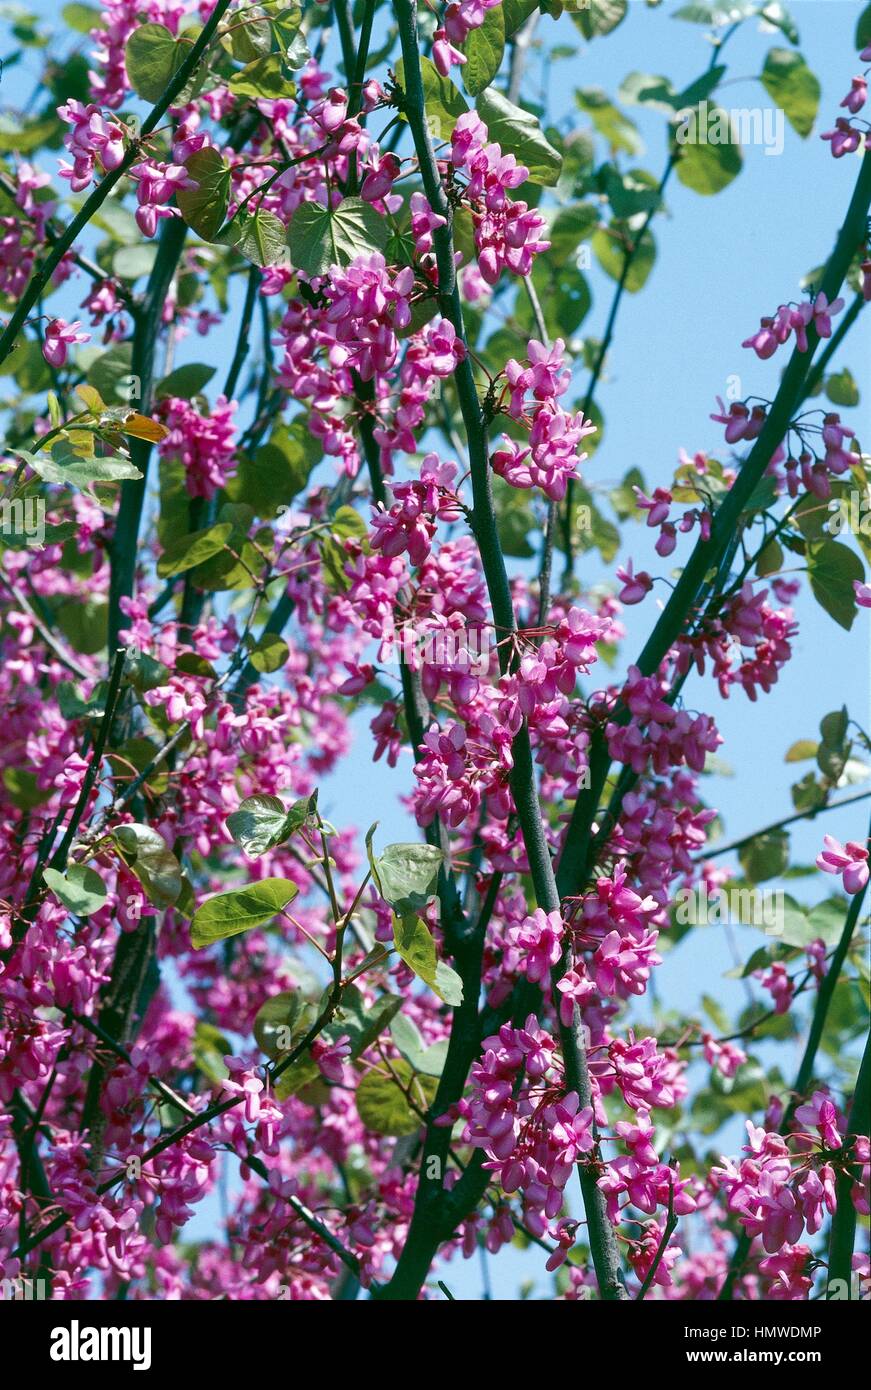 American Senna flowering branches (Cassia marilandica), Fabaceae-Leguminosae. Stock Photo